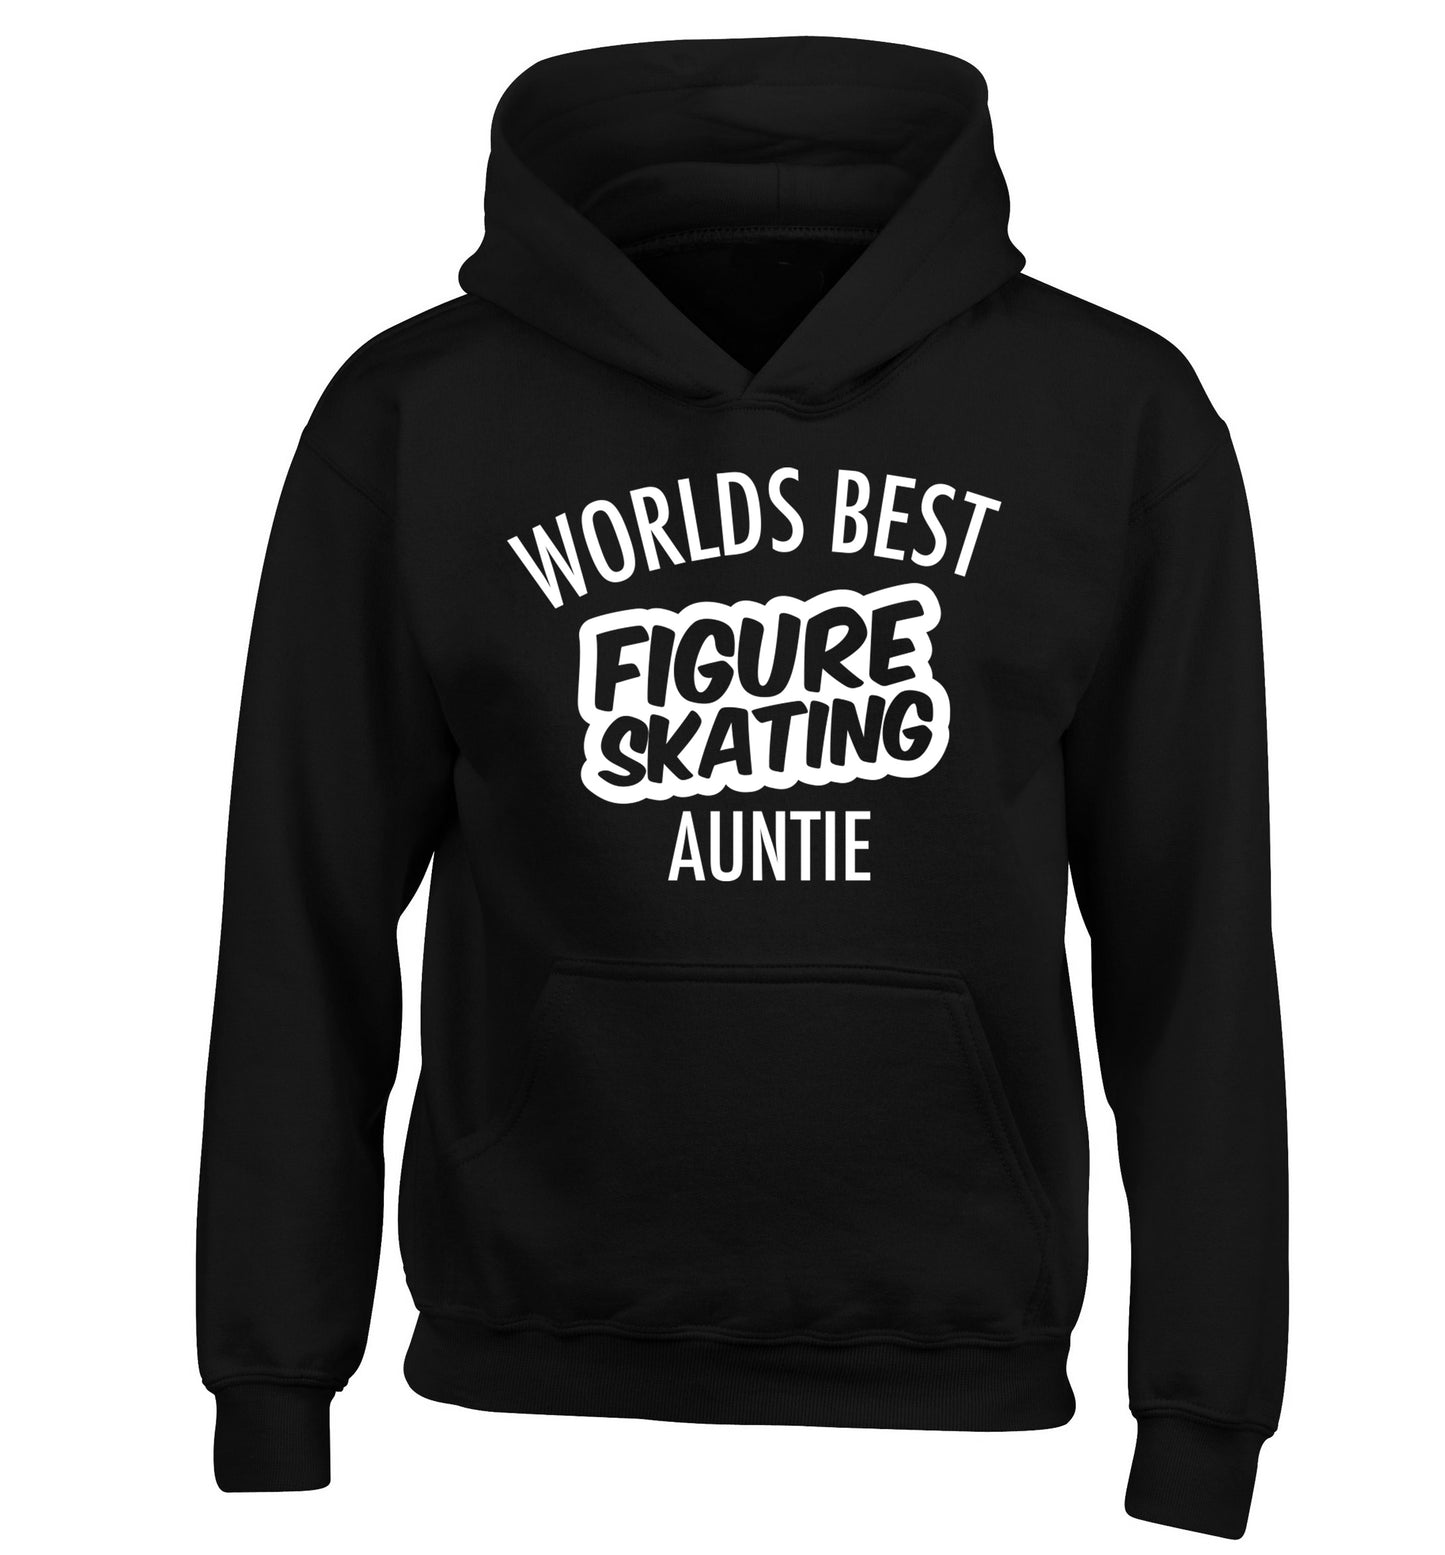 Worlds best figure skating auntie children's black hoodie 12-14 Years